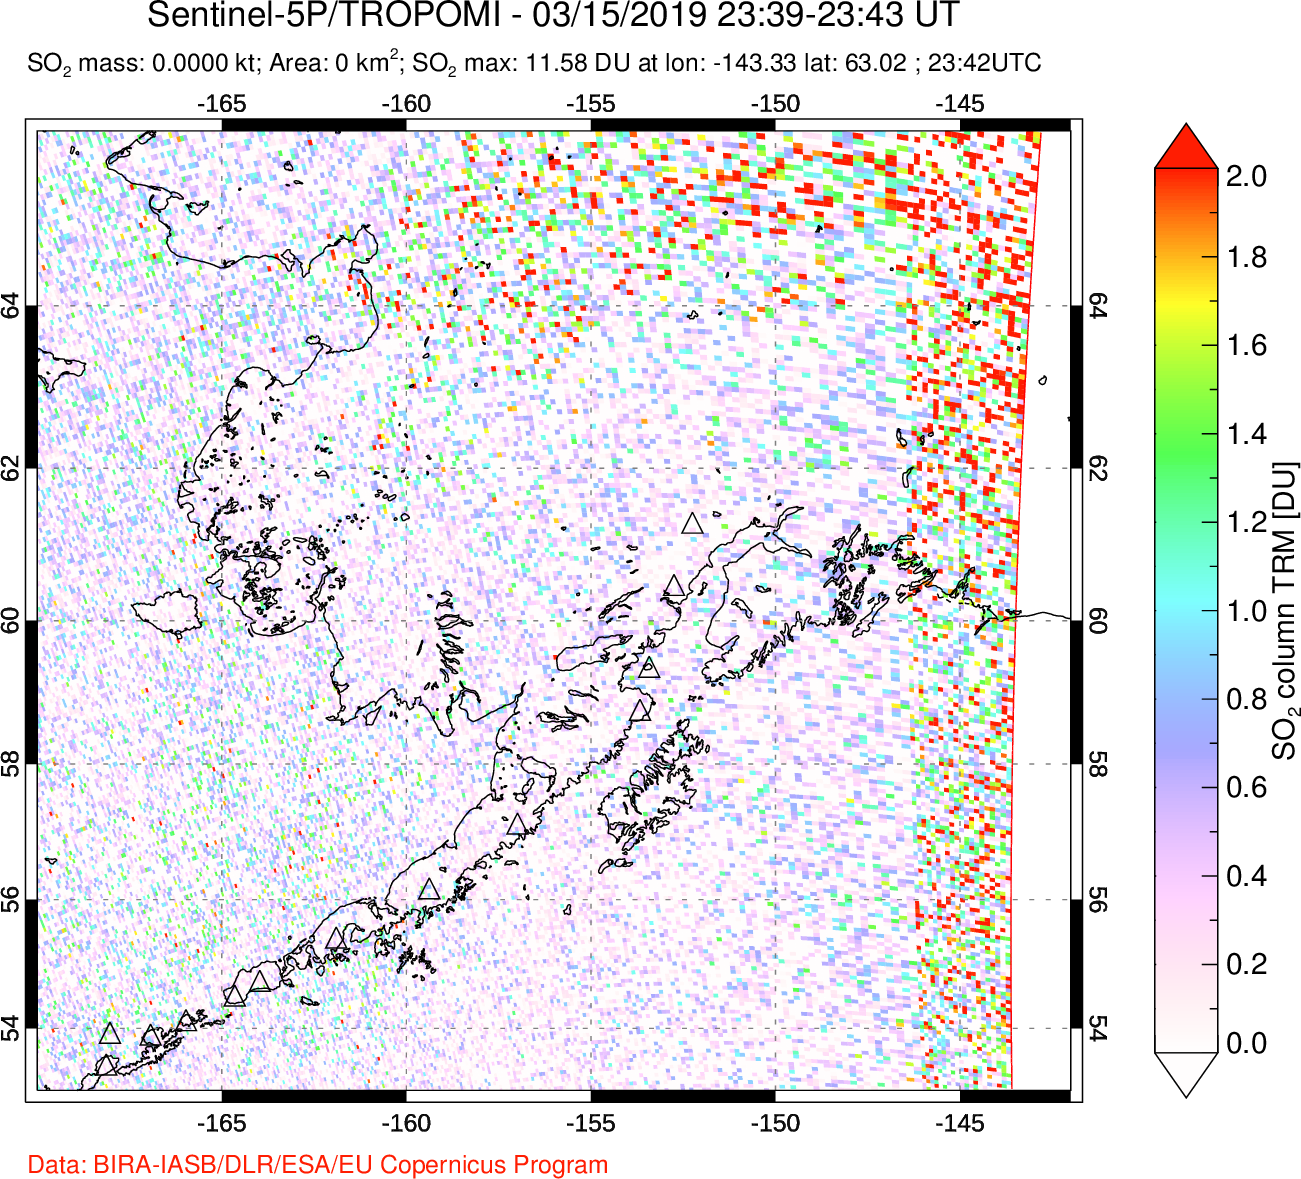 A sulfur dioxide image over Alaska, USA on Mar 15, 2019.